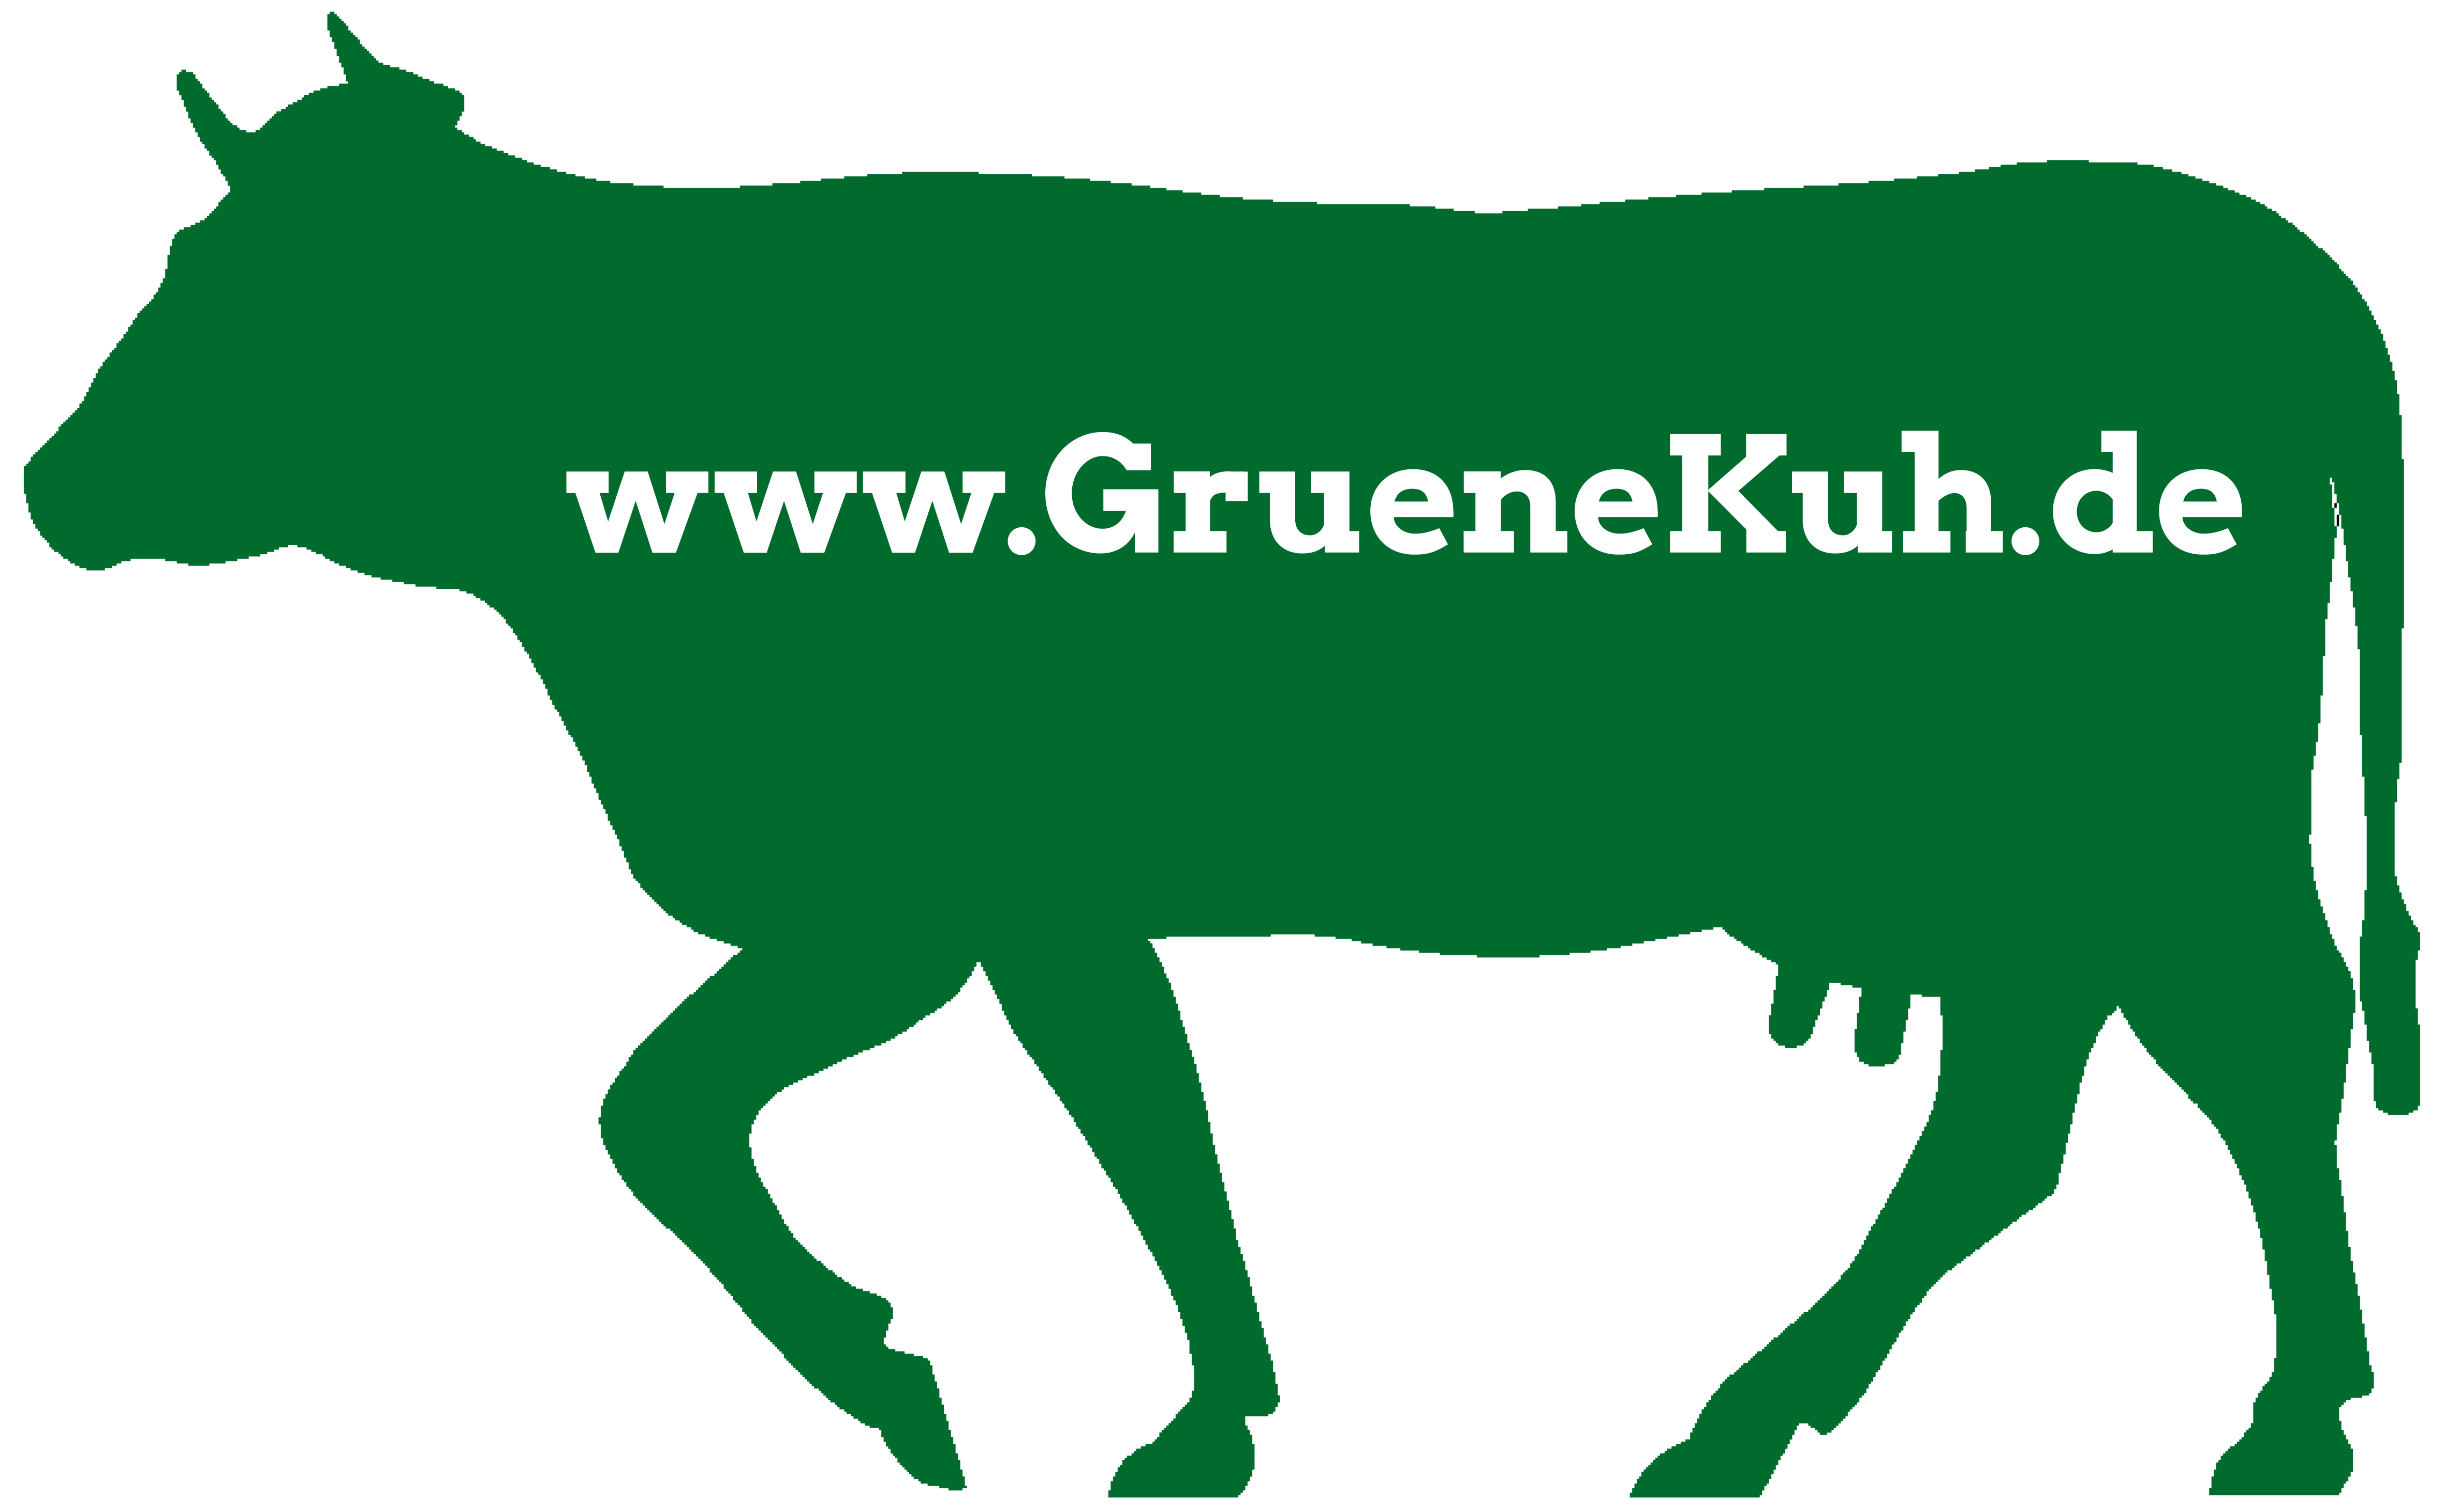 ein Bild der grünen Kuh